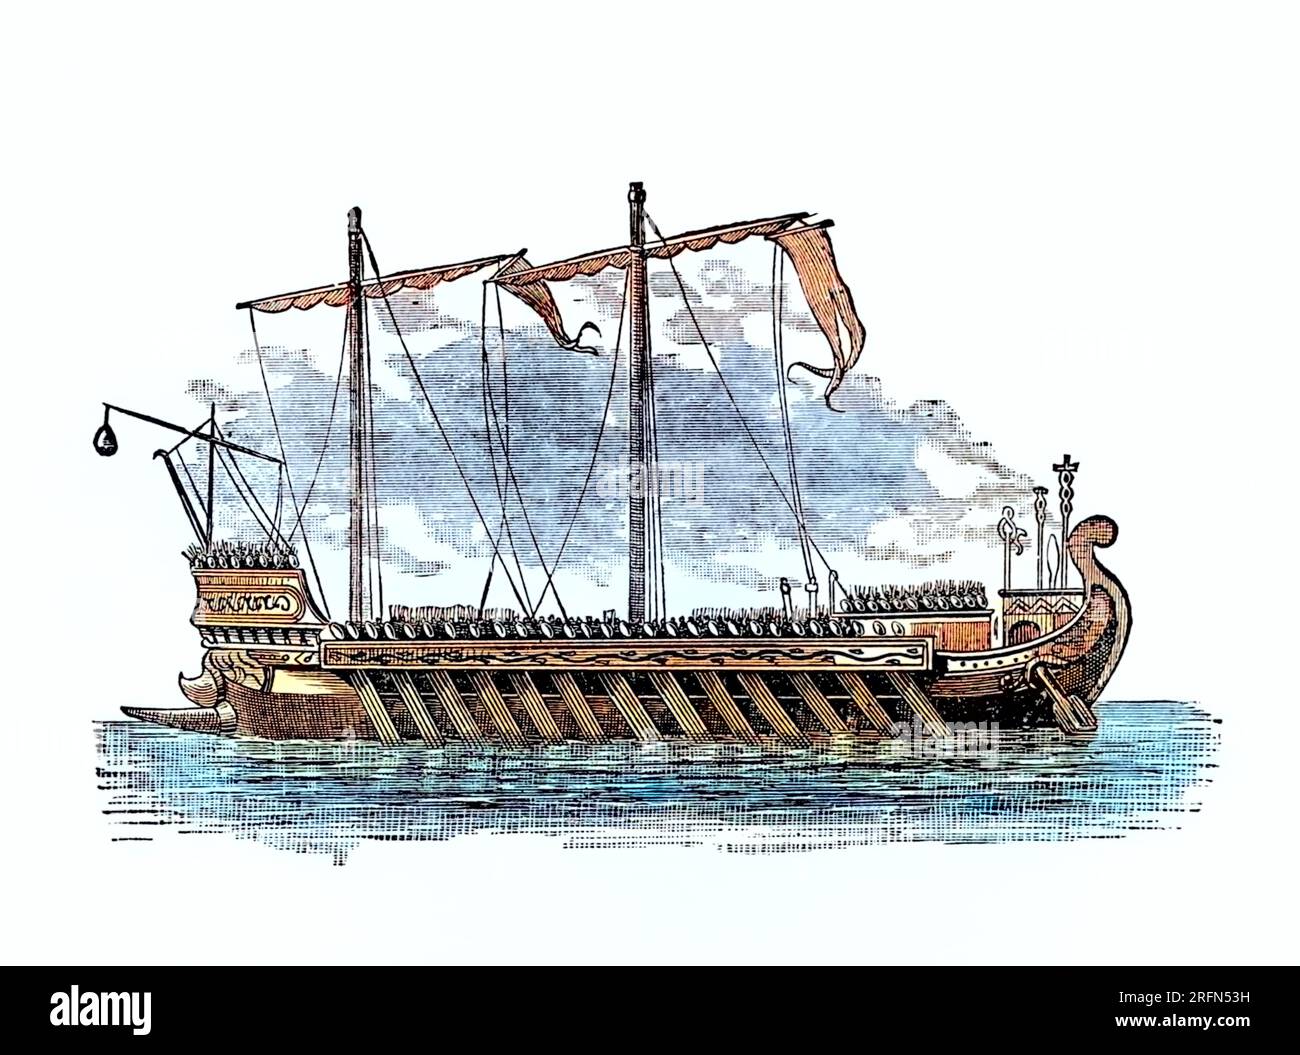 Eine Kombüse ist ein Ruderschiff. Sie entstand im späten zweiten Jahrtausend v. Chr. unter den Zivilisationen der mediterranen Seefahrt. Stockfoto